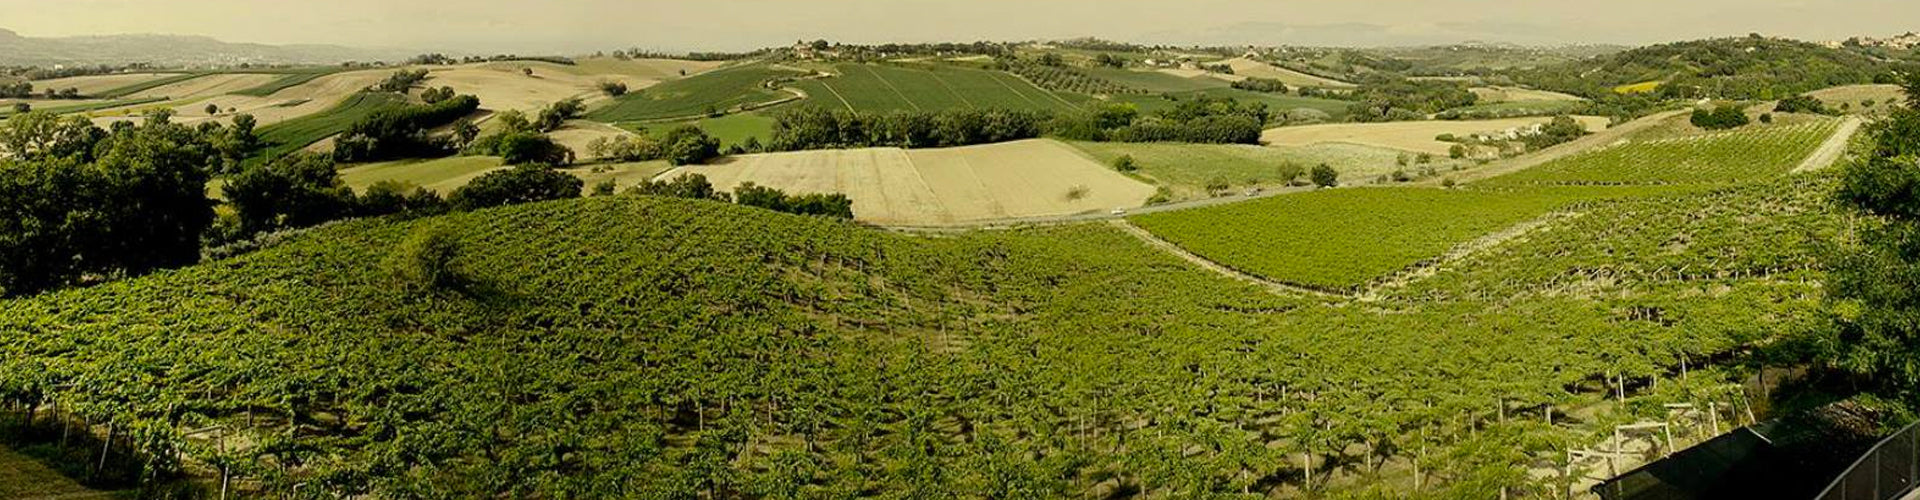 Fattoria La Valentina Vineyards in Italy's Abruzzo Wine Region